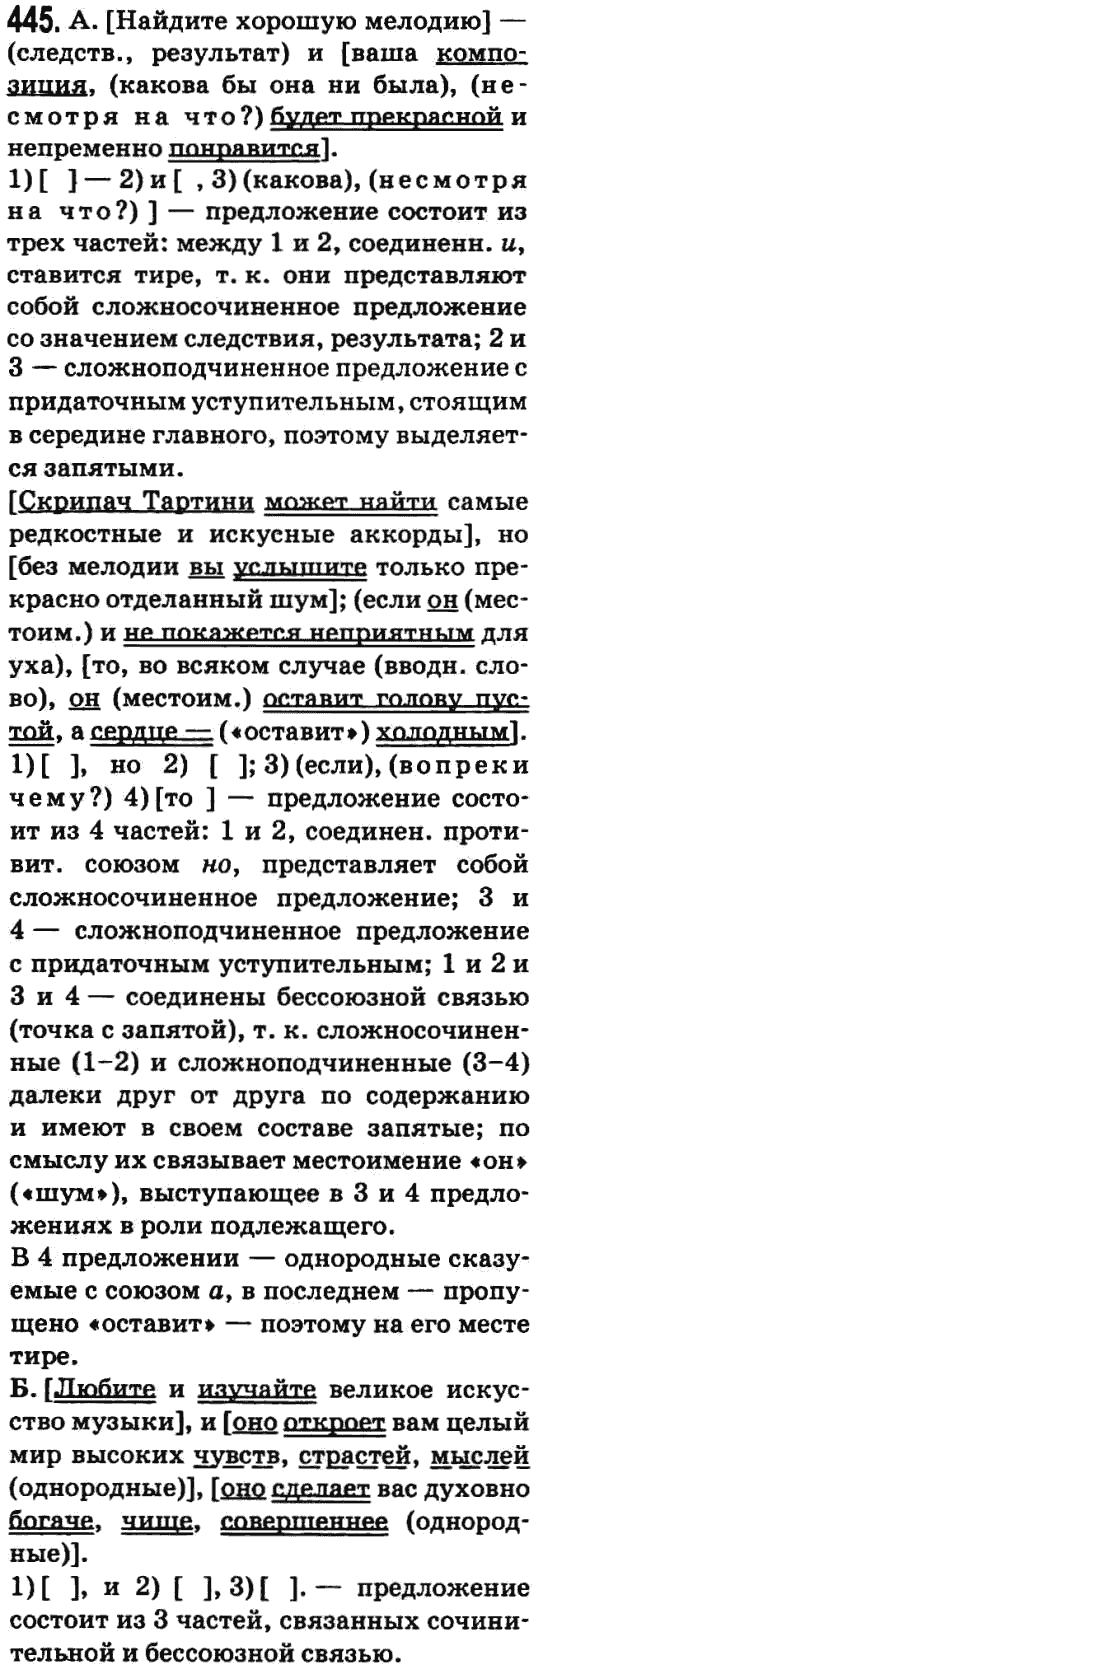 Русский язык 9 класс Баландина Н.Ф., Дегтярева К.В. Задание 445